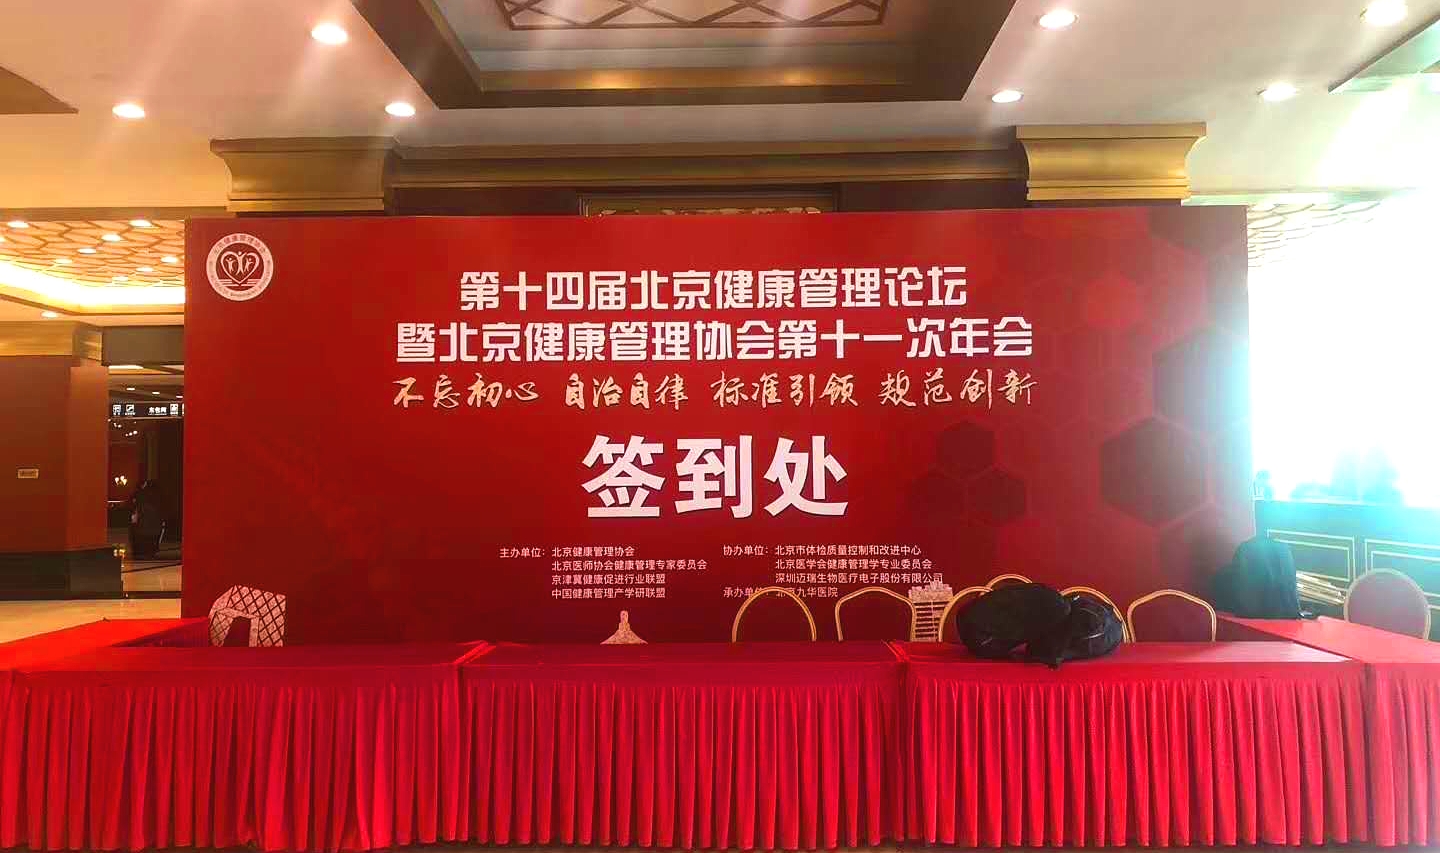 我公司消化道早筛技术亮相北京健康管理协会第十一次年会_北京柏诺康生物科技有限公司